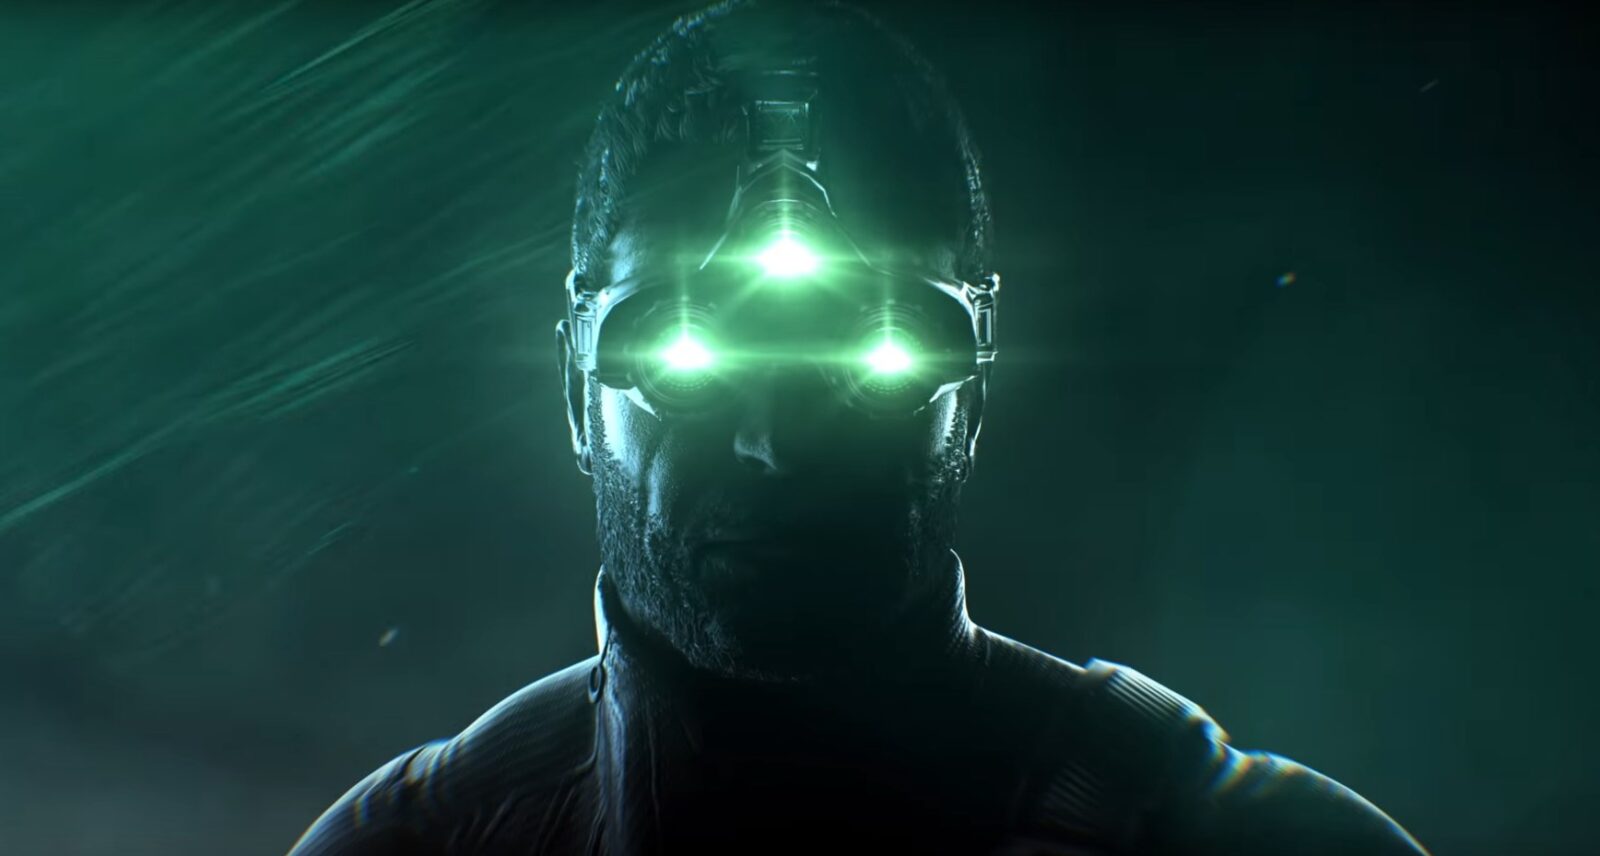 Game Splinter Cell Yang Baru Diklaim Memiliki Unsur Yang Mirip Dengan Hitman